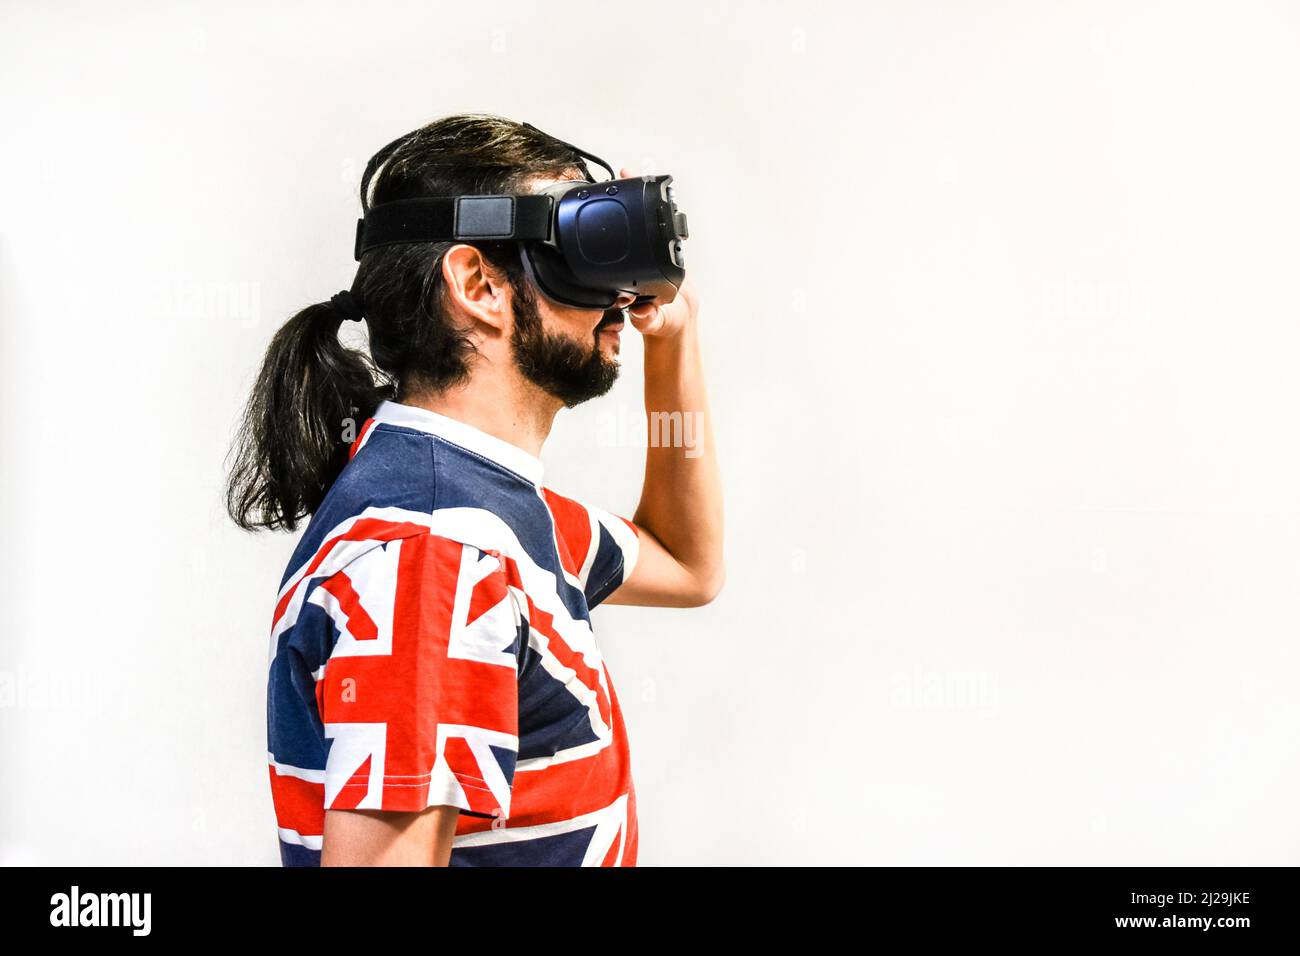 Homme sur fond blanc avec micro-casques de réalité virtuelle en marche, testant la nouvelle technologie VR. Homme avec 4K verres regardant des jeux ou des vidéos Banque D'Images